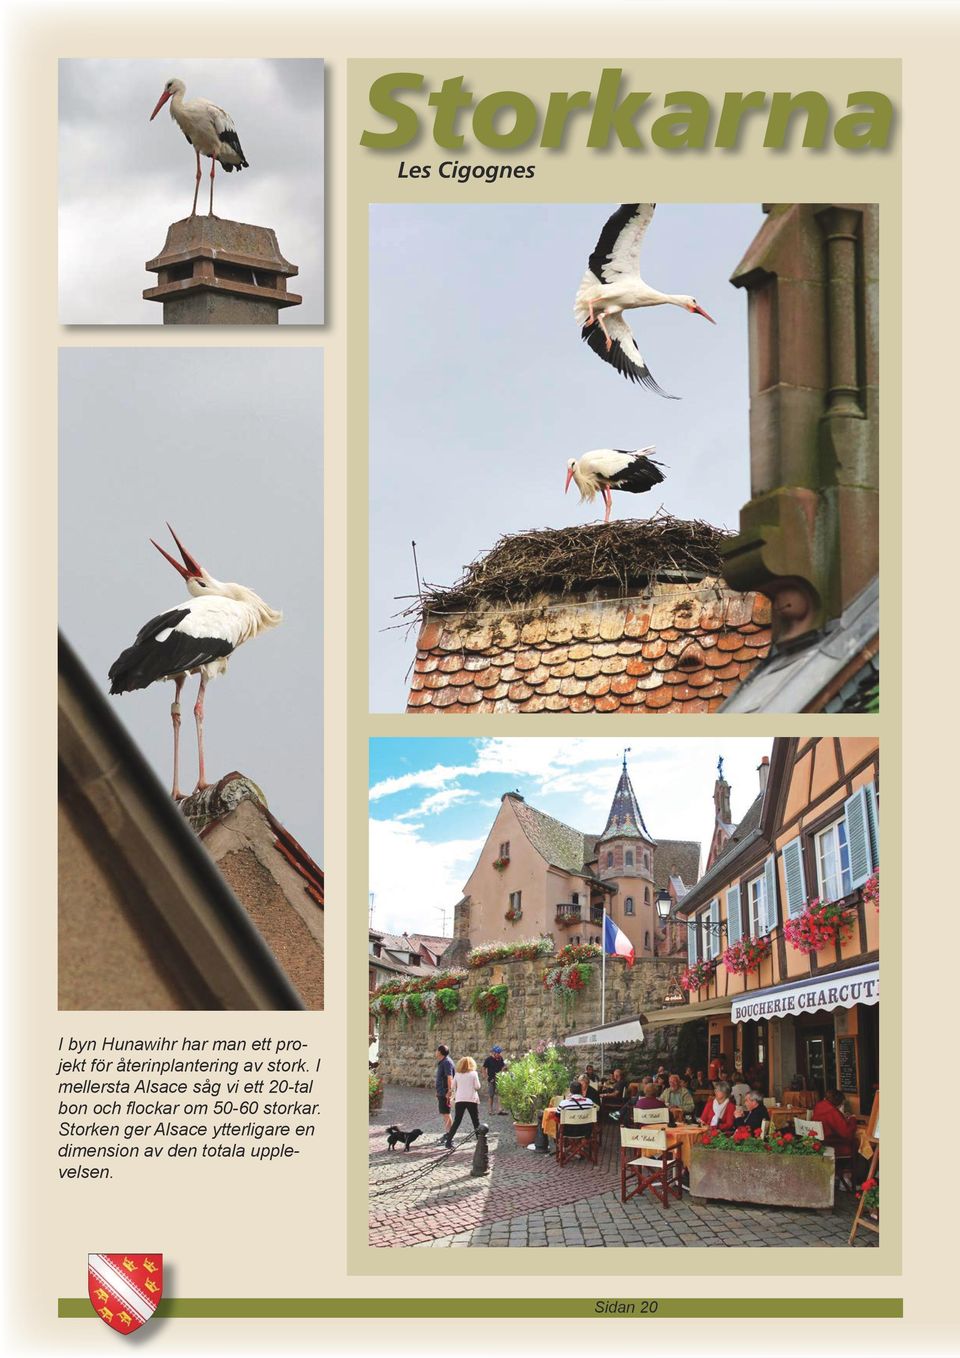 I mellersta Alsace såg vi ett 20-tal bon och flockar om